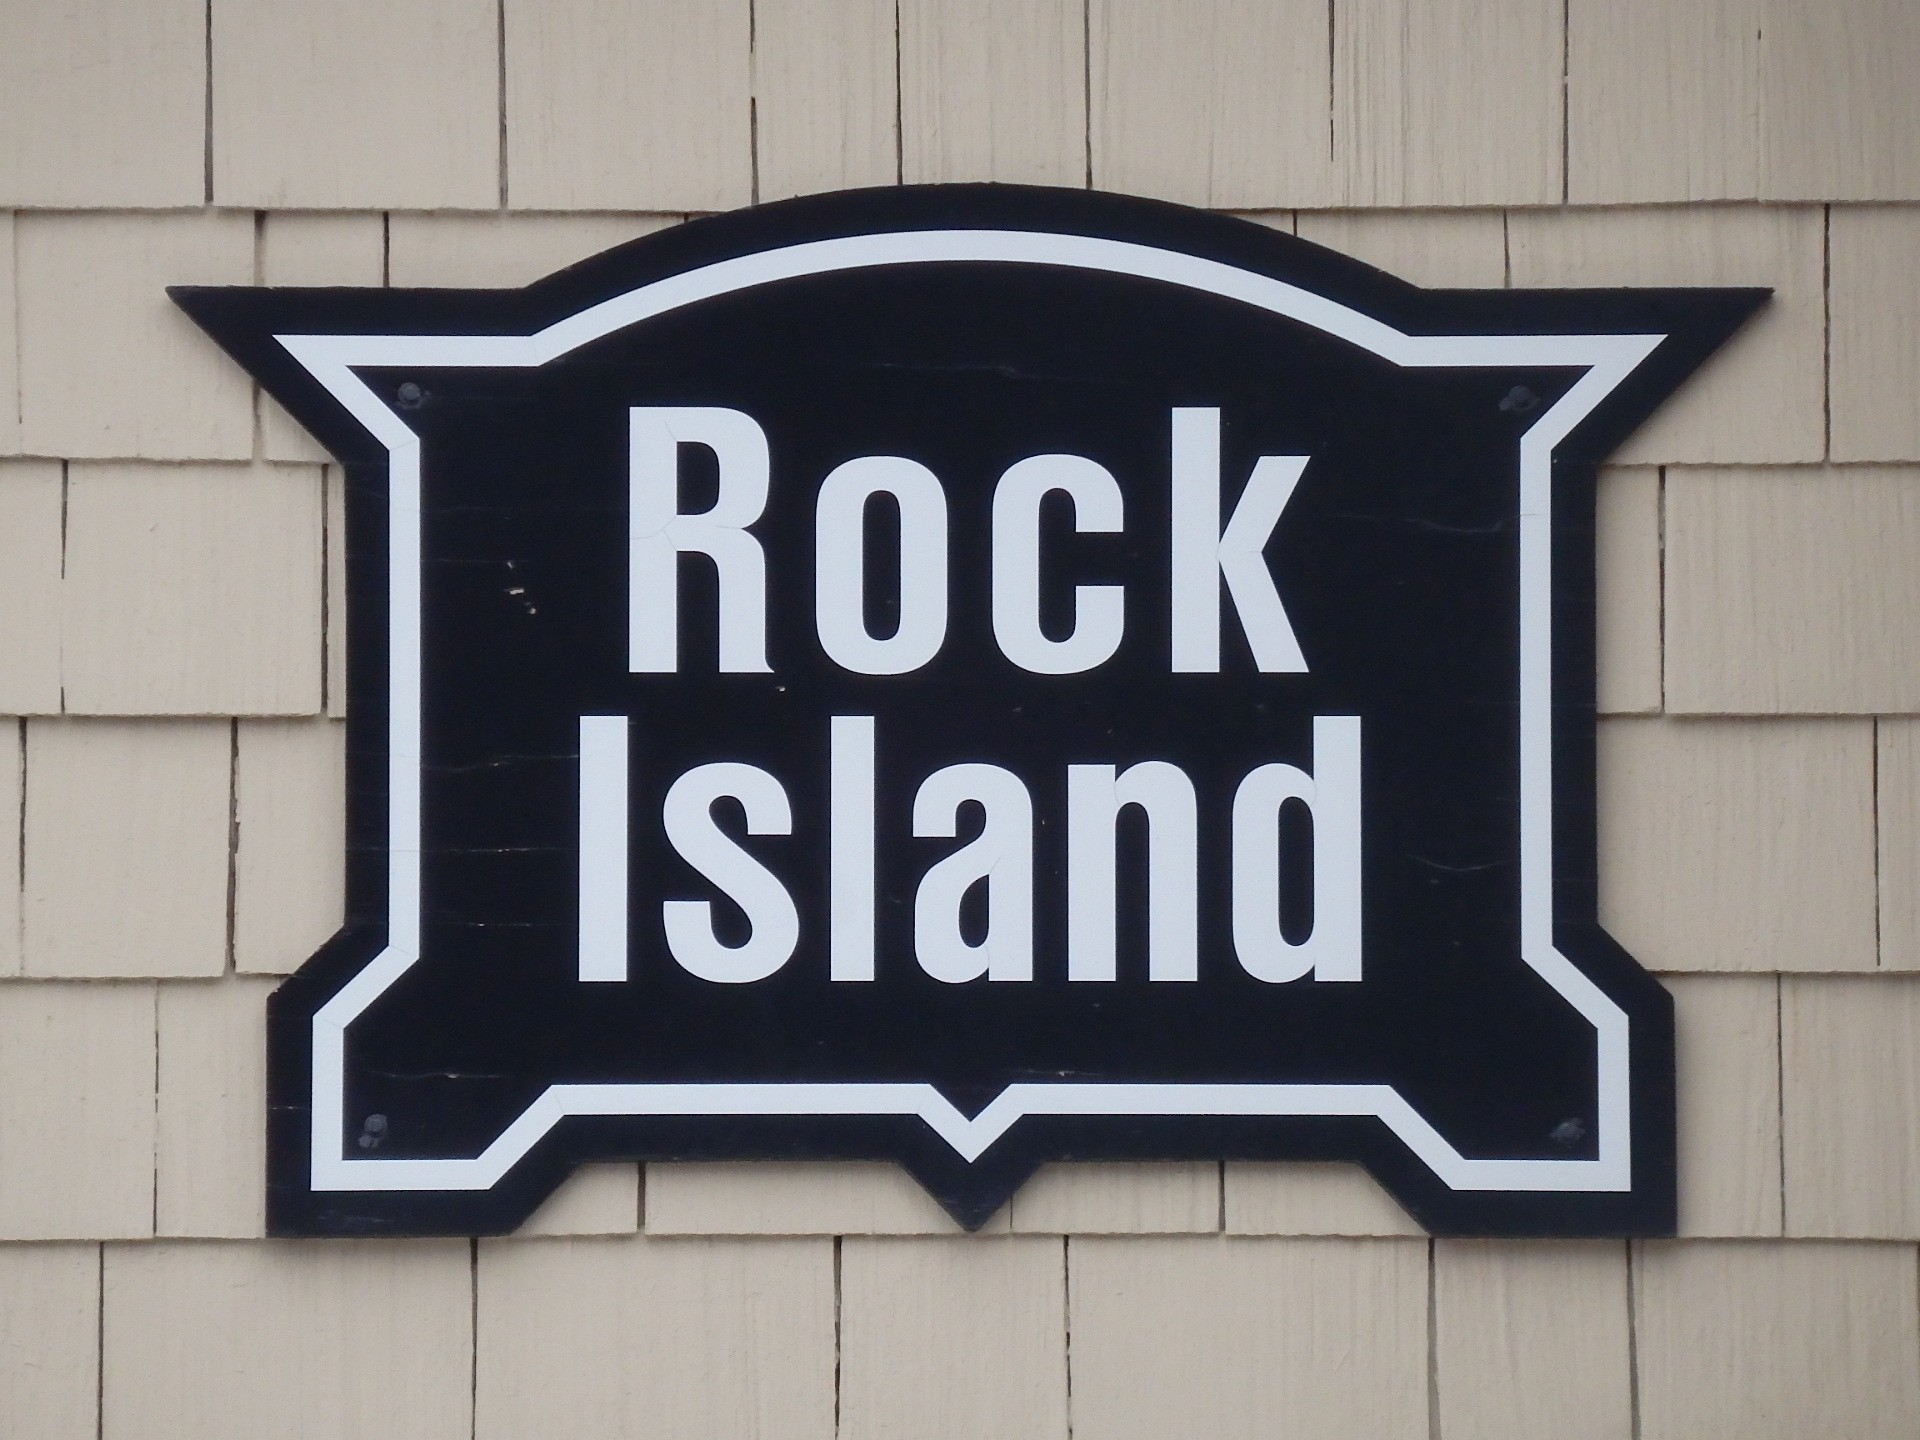 Foto: ex estación del Rock Island - Sioux Falls (South Dakota), Estados Unidos